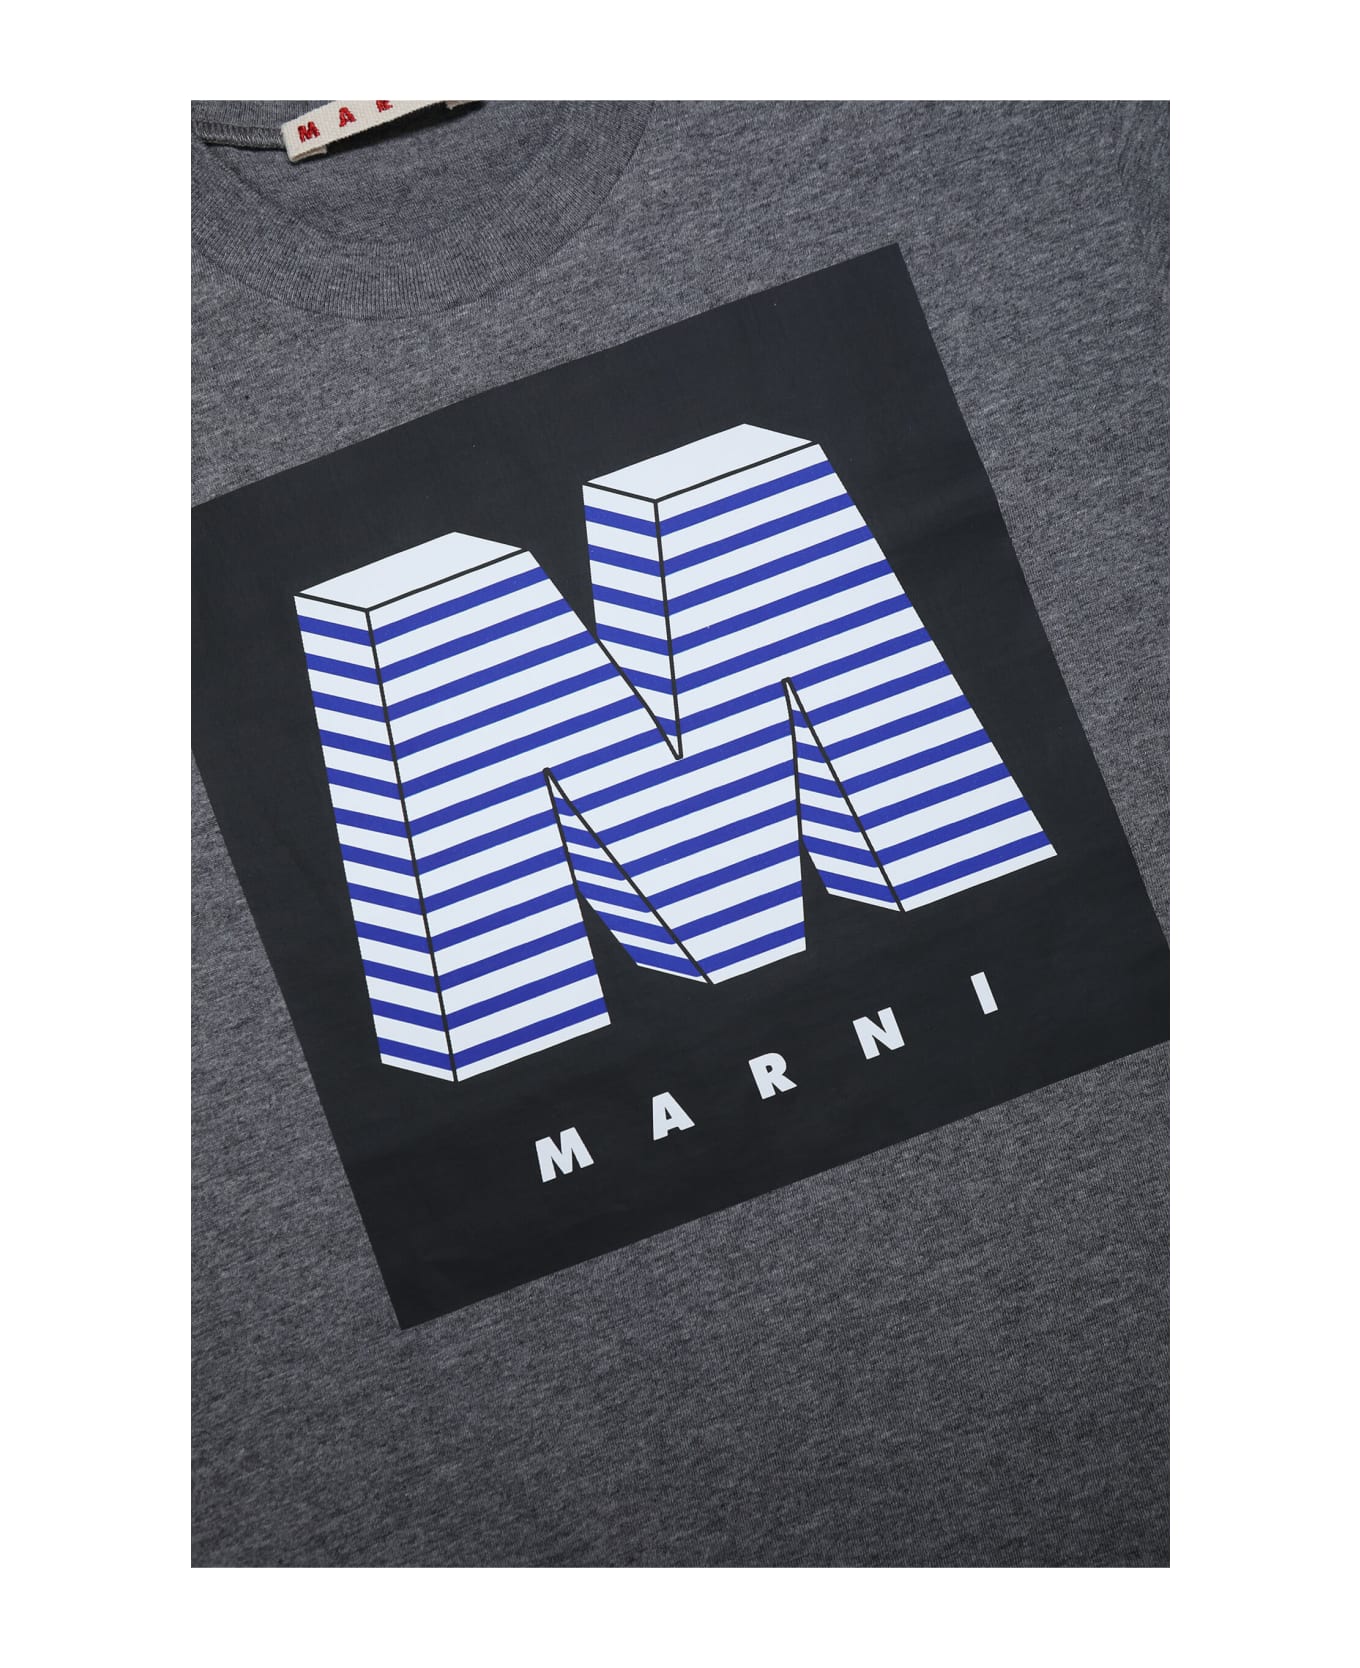 Marni Mt142u T-shirt Marni - Medium grey